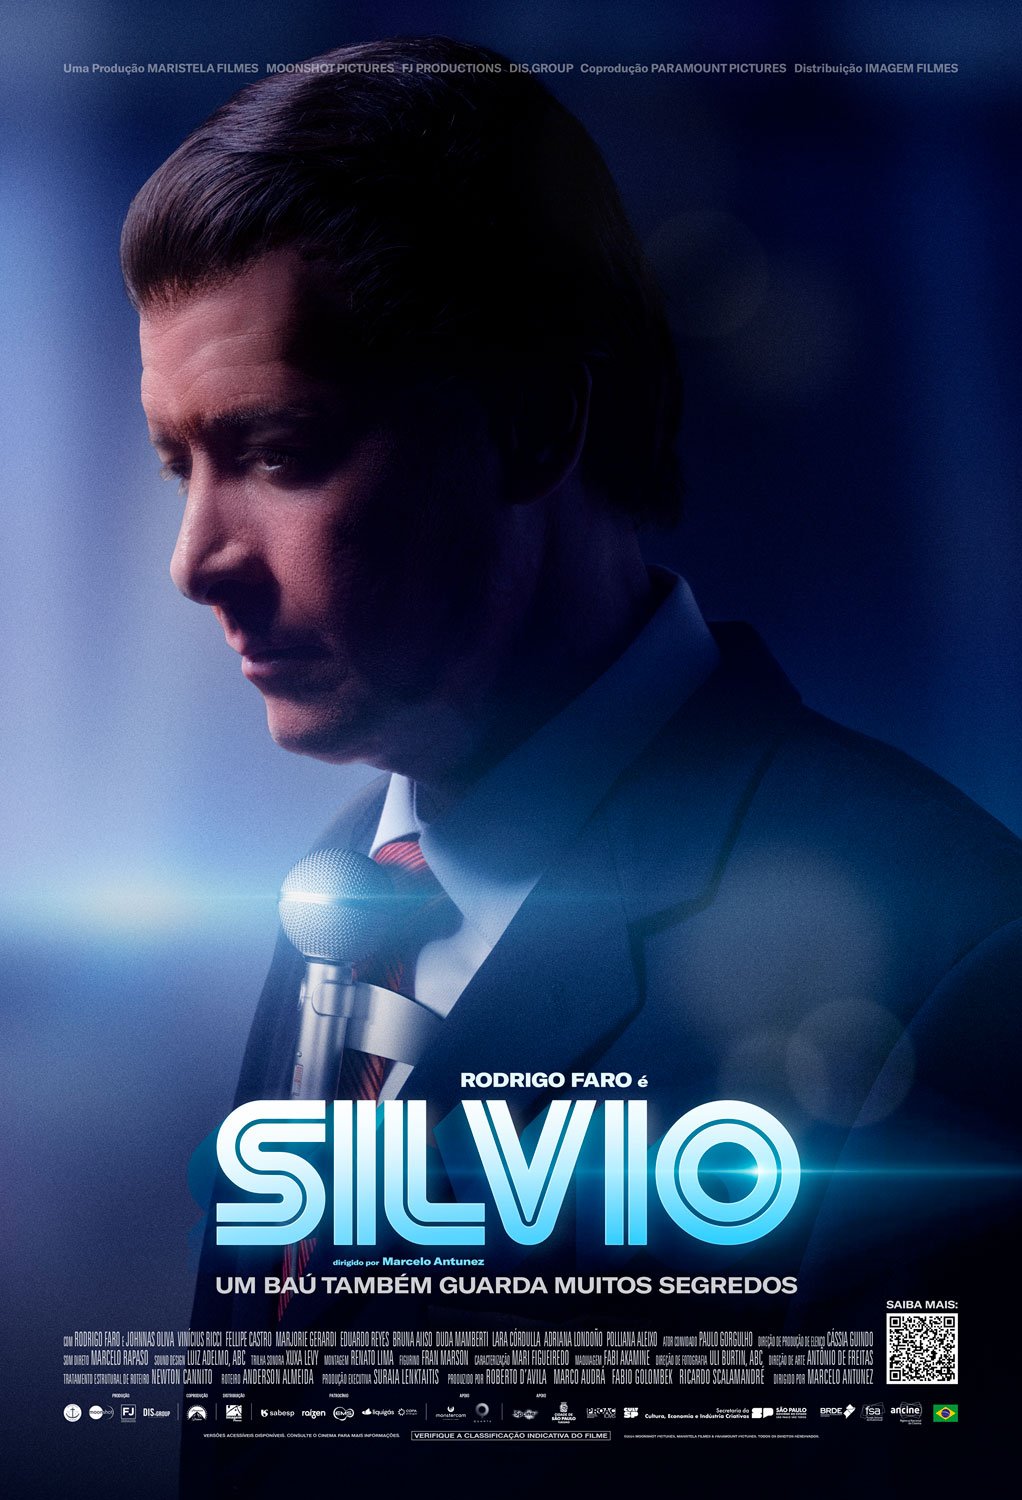 SILVIO: Estrelado por Rodrigo Faro, filme sobre a vida do apresentador Silvio Santos ganha primeiro trailer oficial